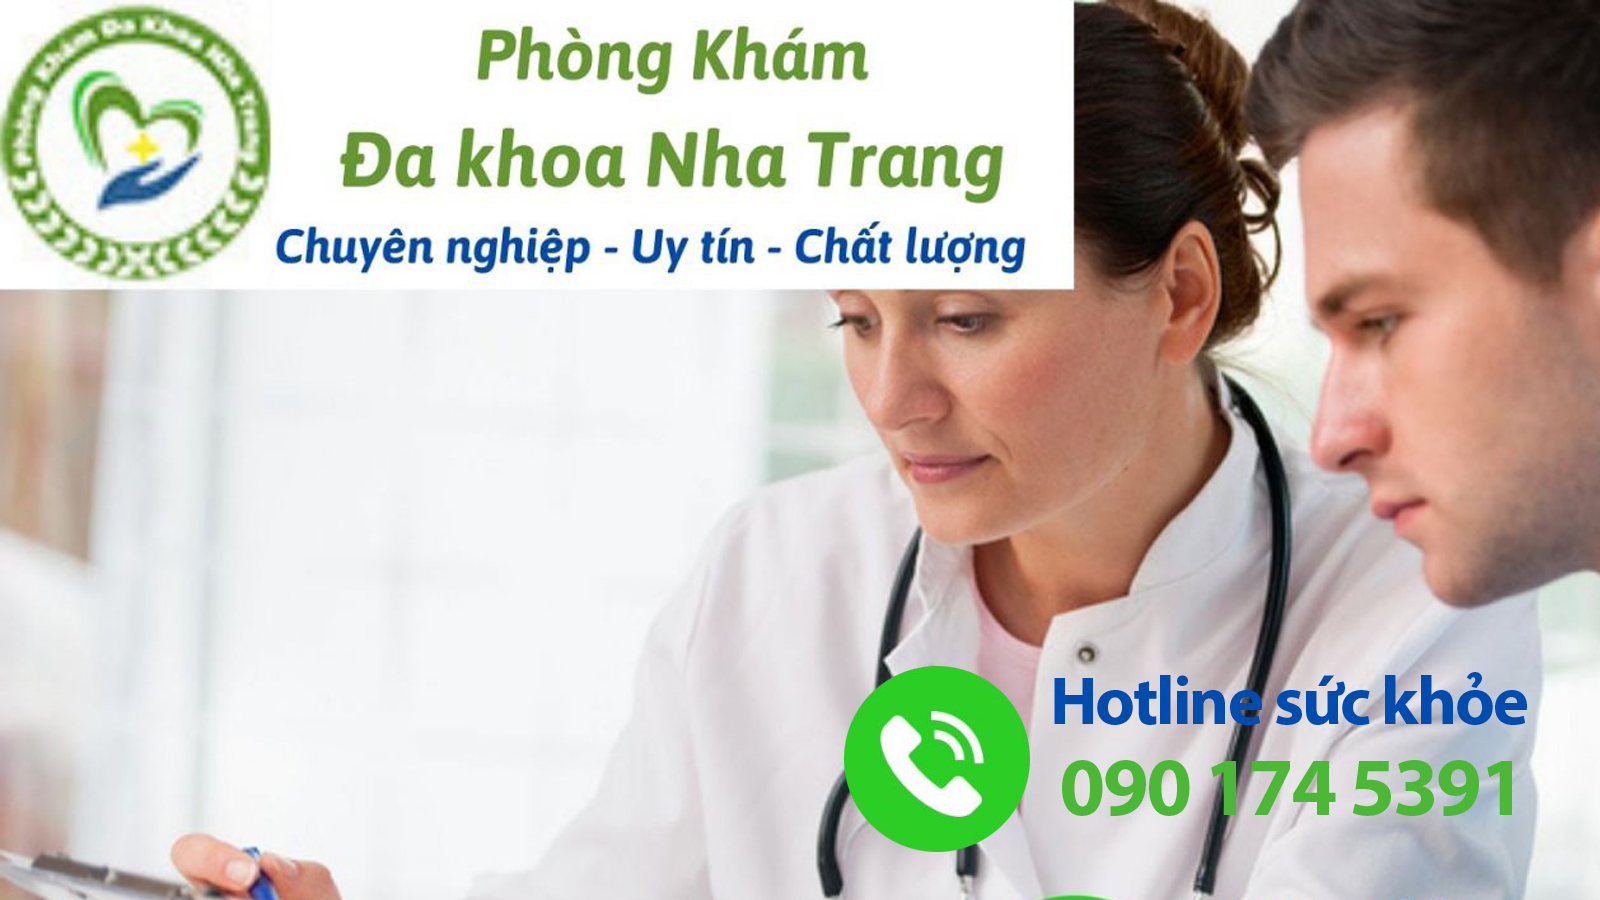  Địa điểm điều trị các vấn đề ở bao quy đầu uy tín - chất lượng tại Nha Trang, Khánh Hòa